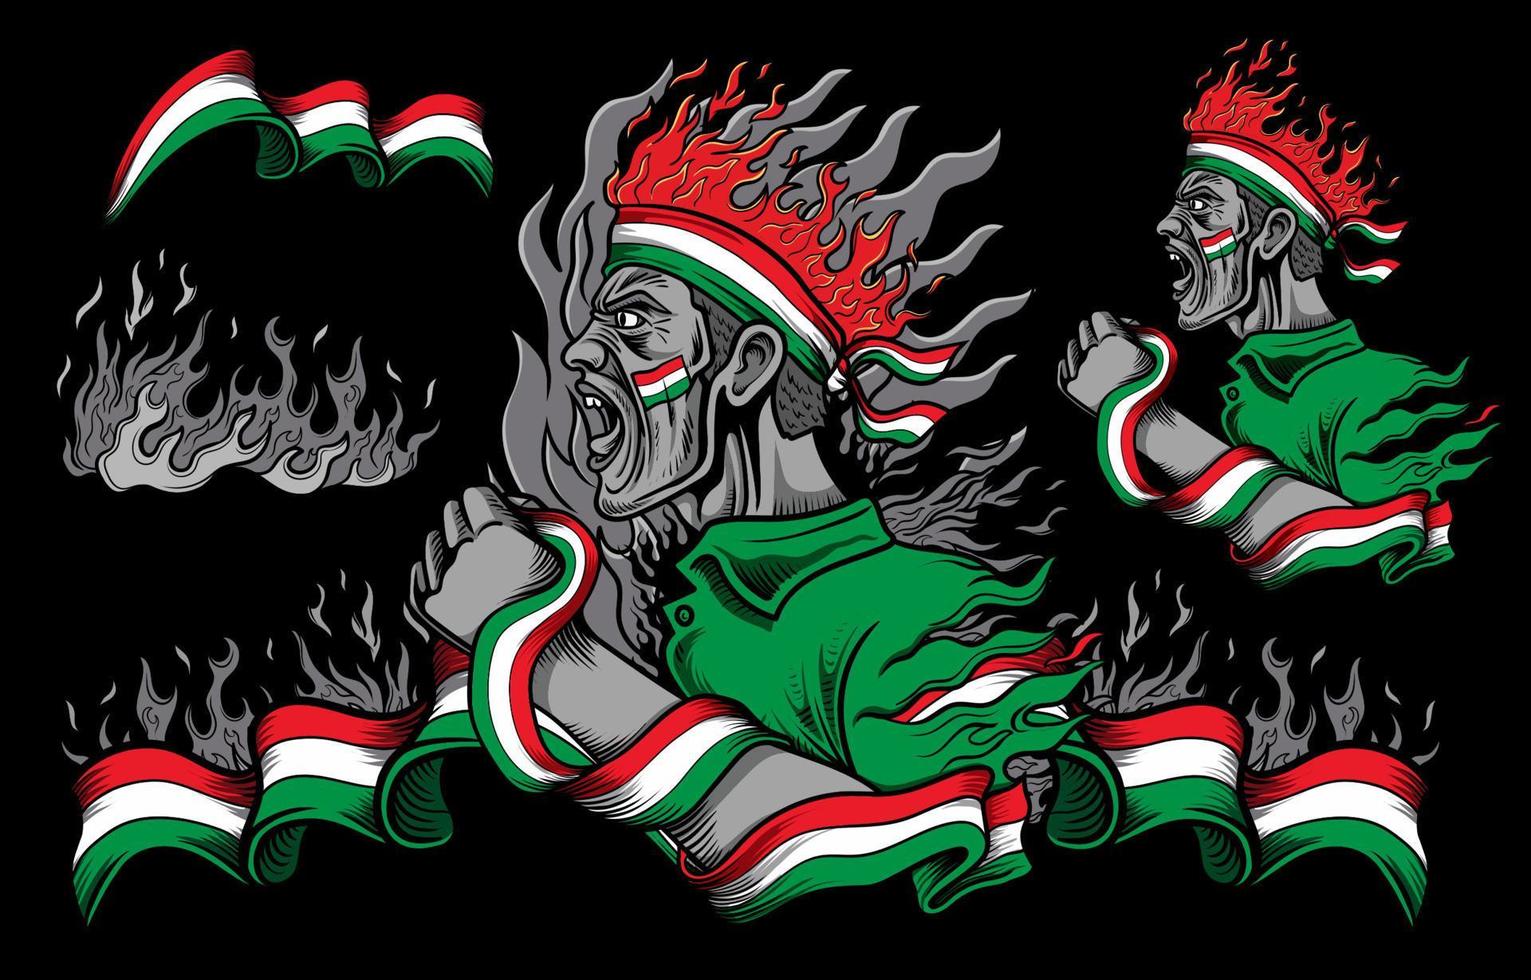 ungarische flagge und feuerelemente mit schreienden menschen vektor